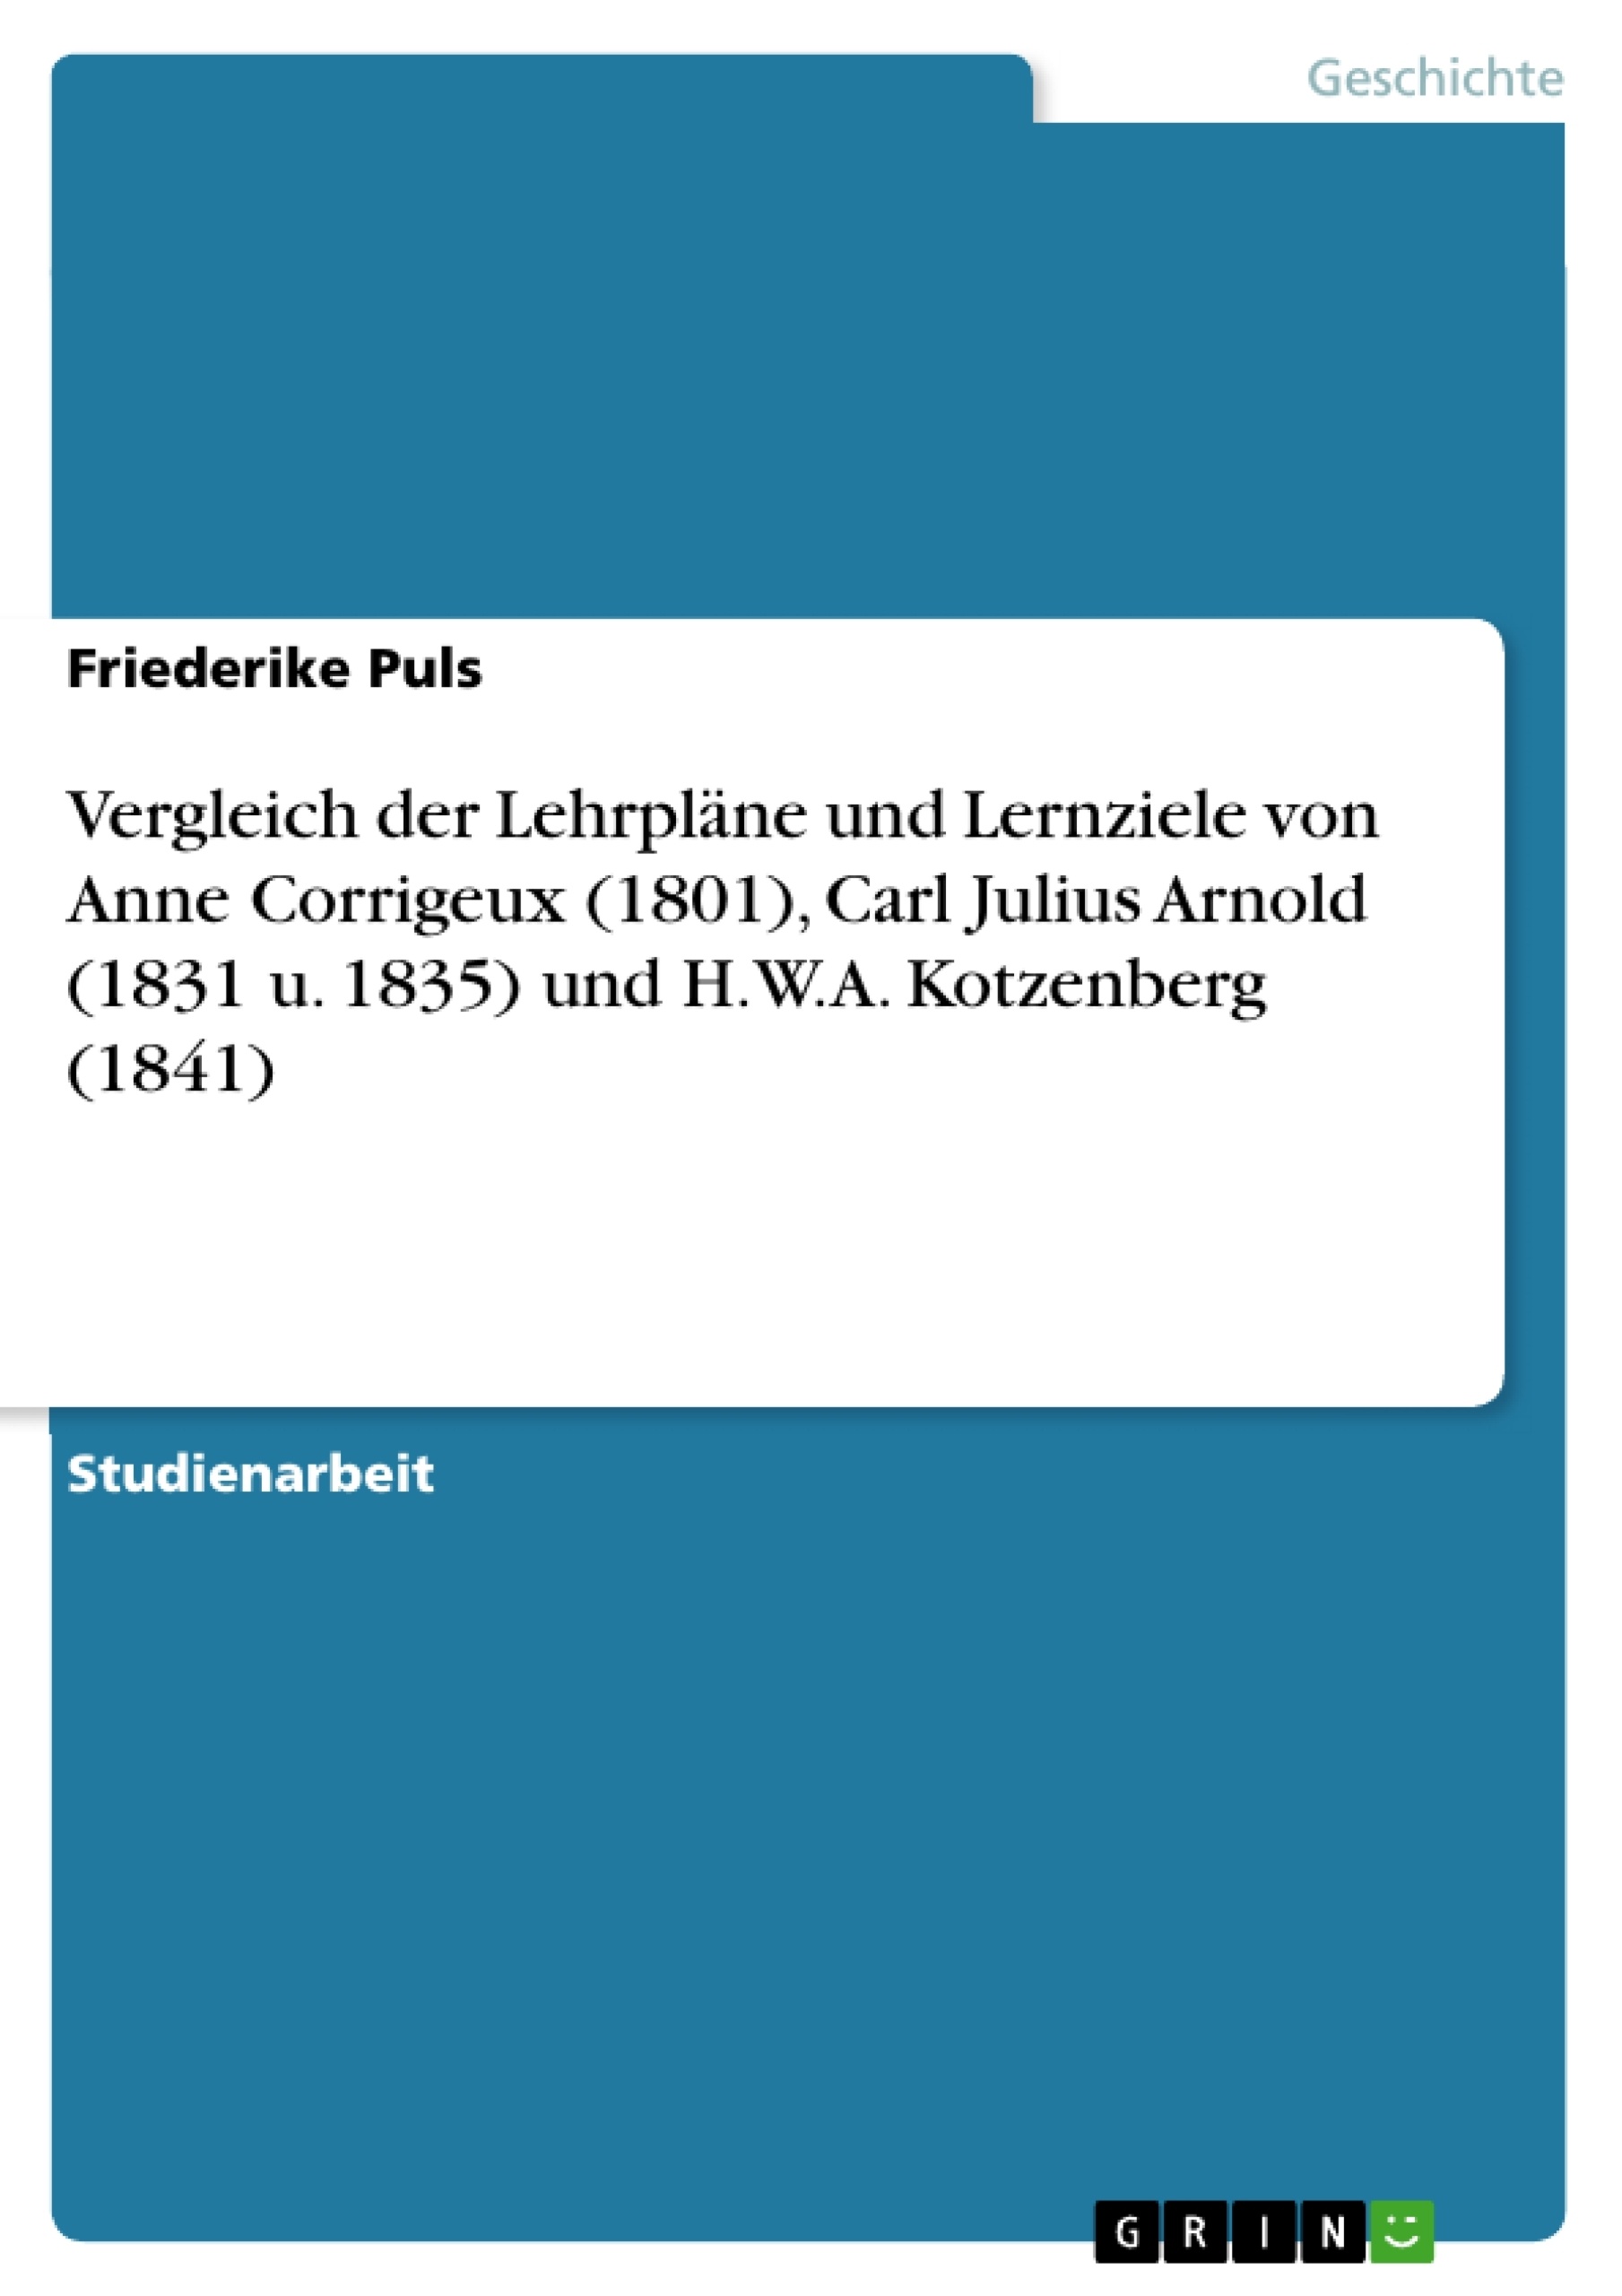 Title: Vergleich der Lehrpläne und Lernziele von Anne Corrigeux (1801), Carl Julius Arnold (1831 u. 1835) und H.W.A. Kotzenberg (1841)